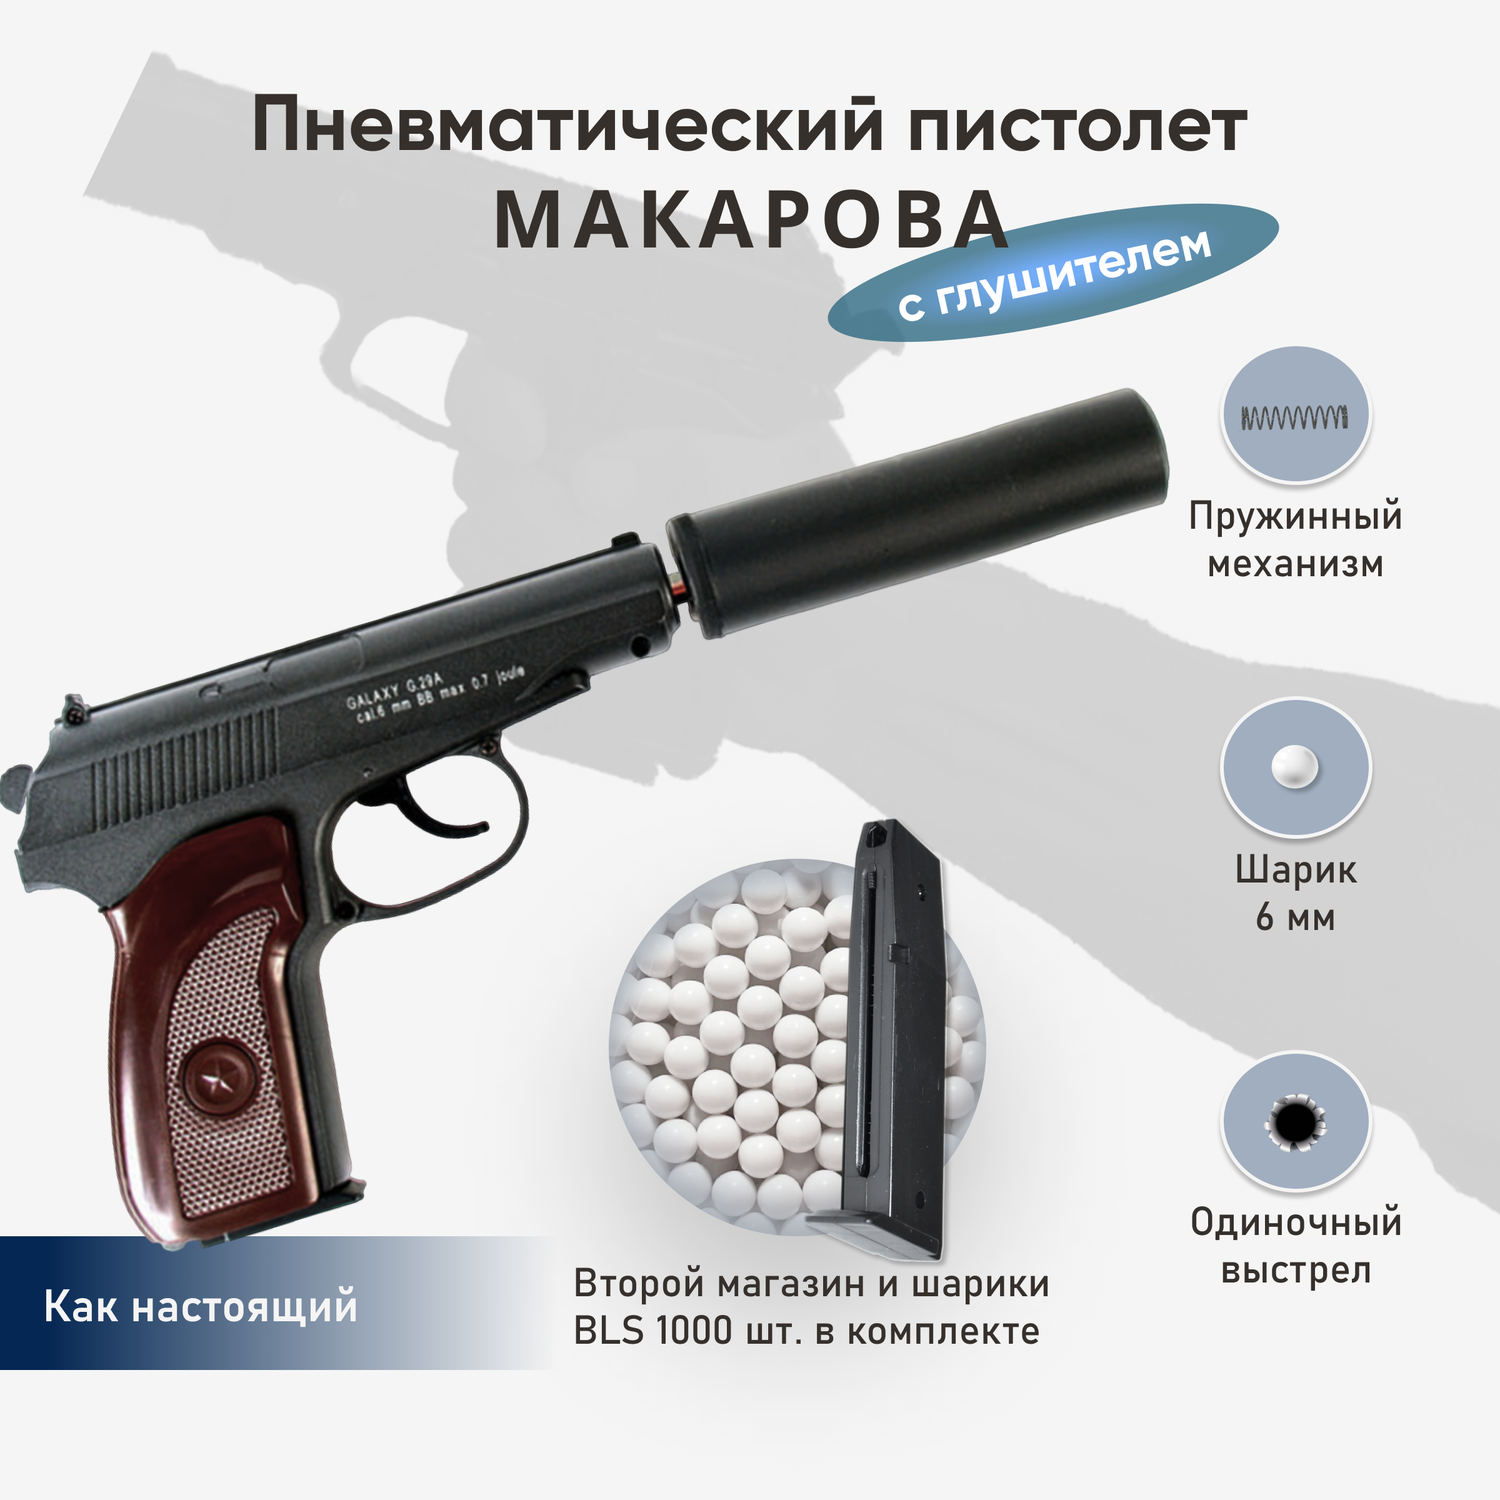 Пистолет Galaxy Макарова с глушителем второй магазин и шарики 1000 шт - фото 2